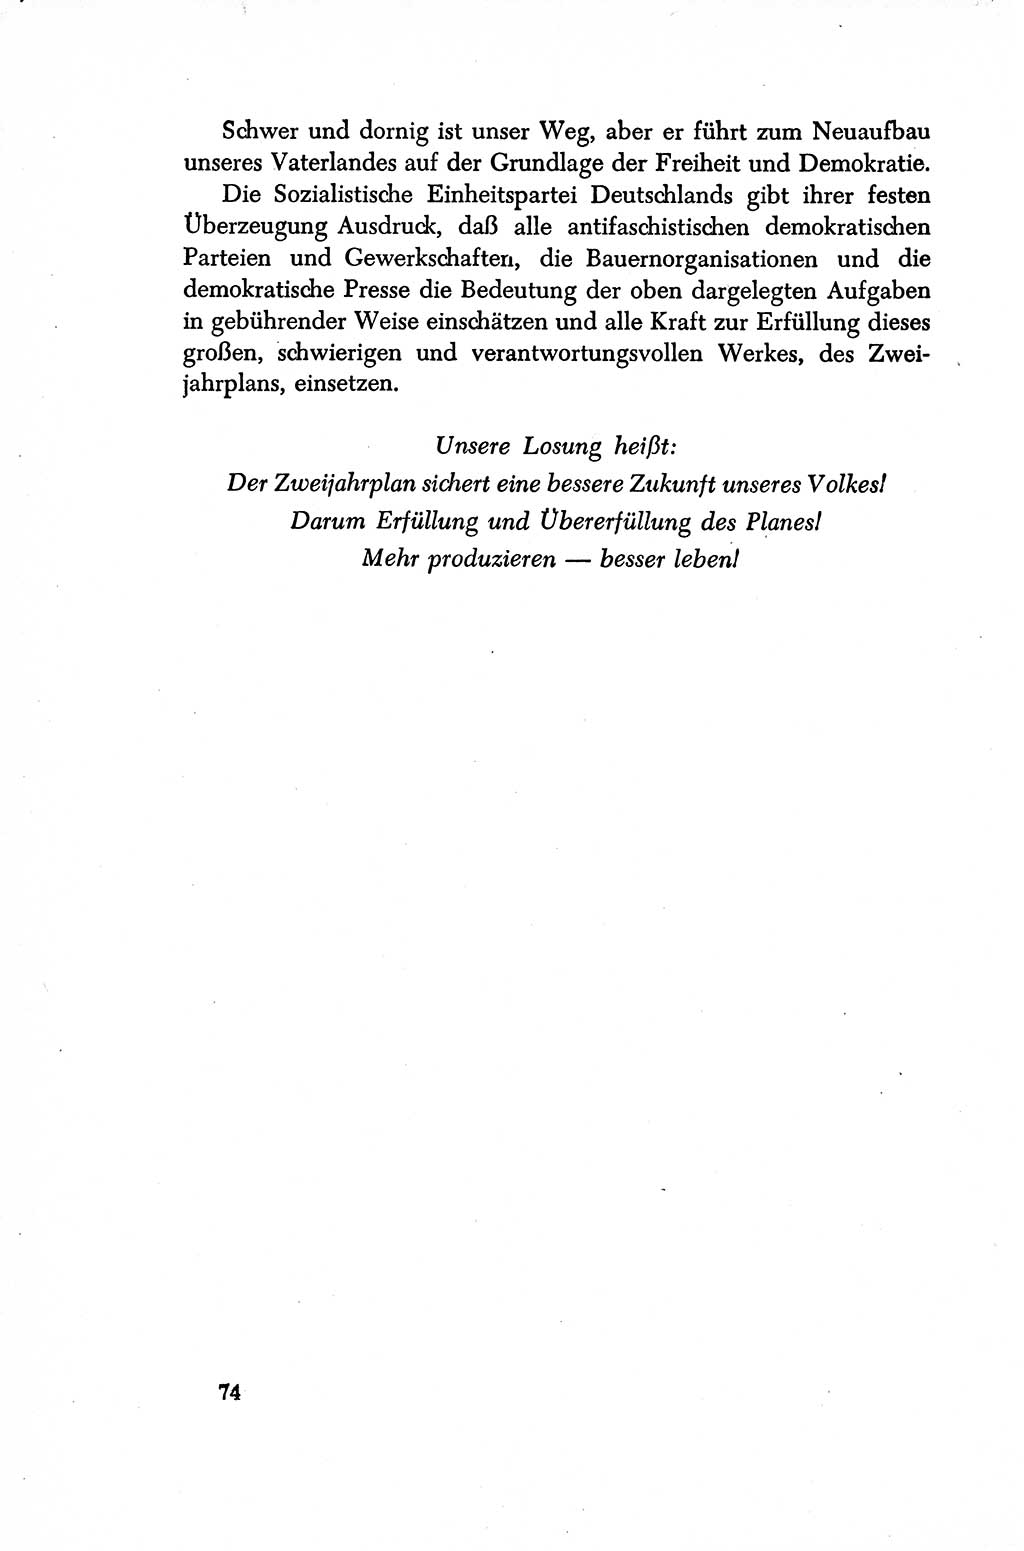 Dokumente der Sozialistischen Einheitspartei Deutschlands (SED) [Sowjetische Besatzungszone (SBZ) Deutschlands/Deutsche Demokratische Republik (DDR)] 1948-1950, Seite 74 (Dok. SED SBZ Dtl. DDR 1948-1950, S. 74)